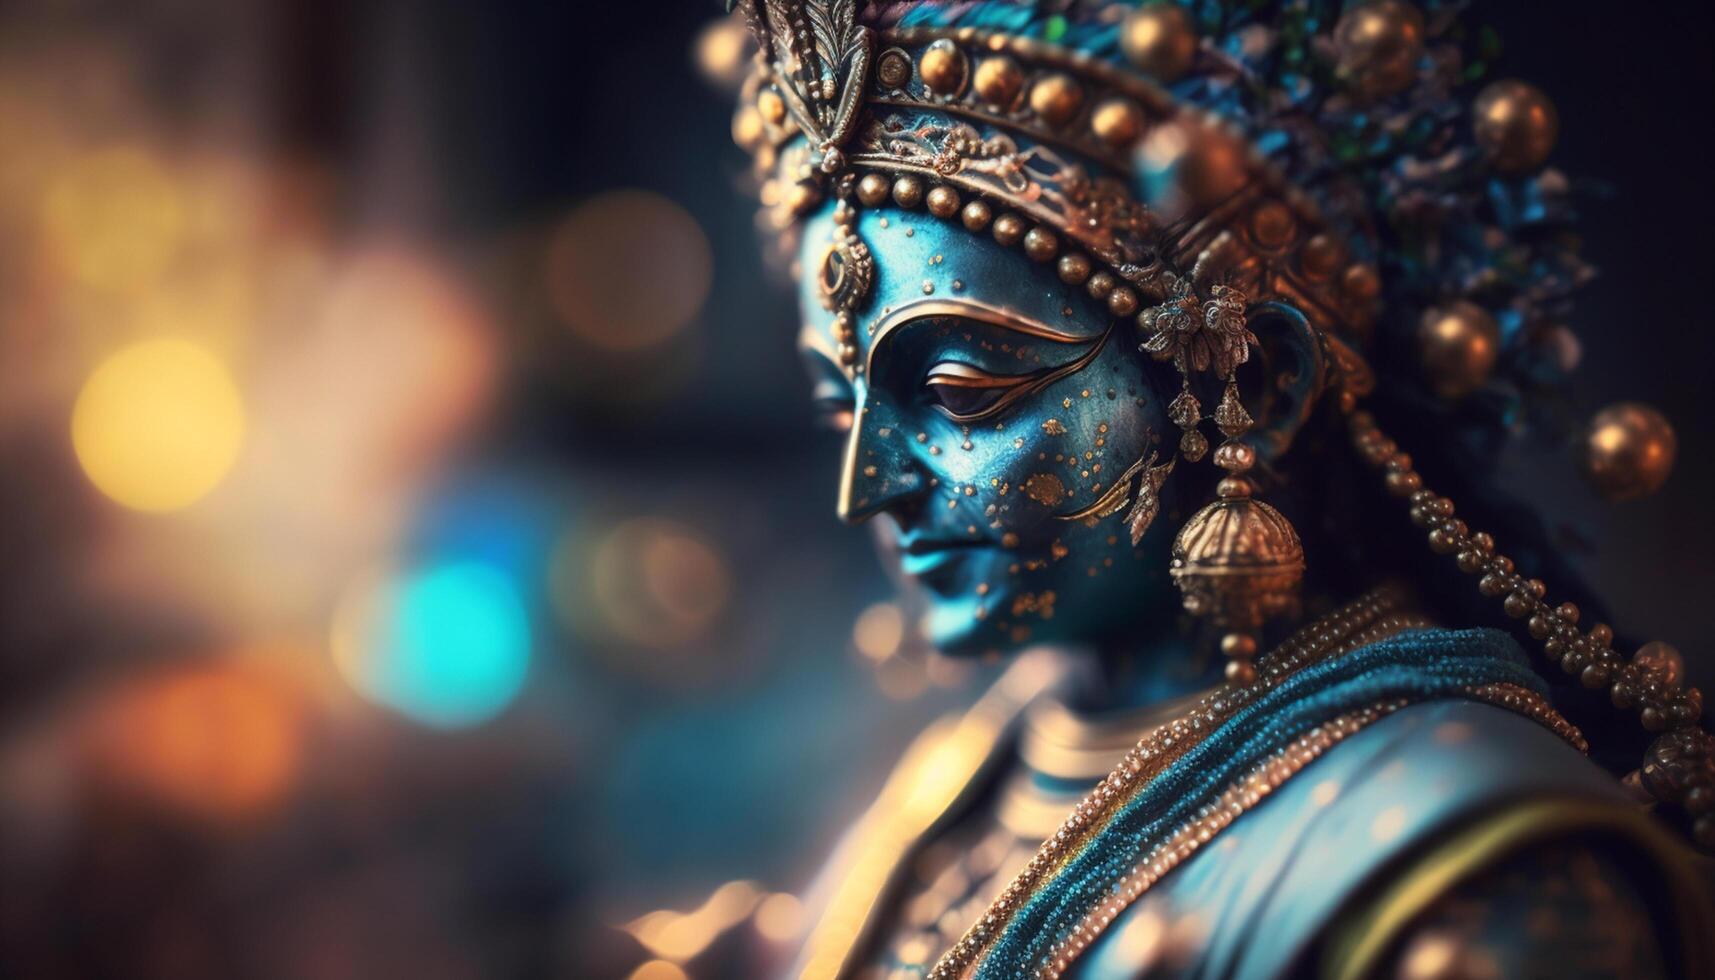 sereno retrato do senhor Krishna, a Deus do amor e compaixão ai gerado foto